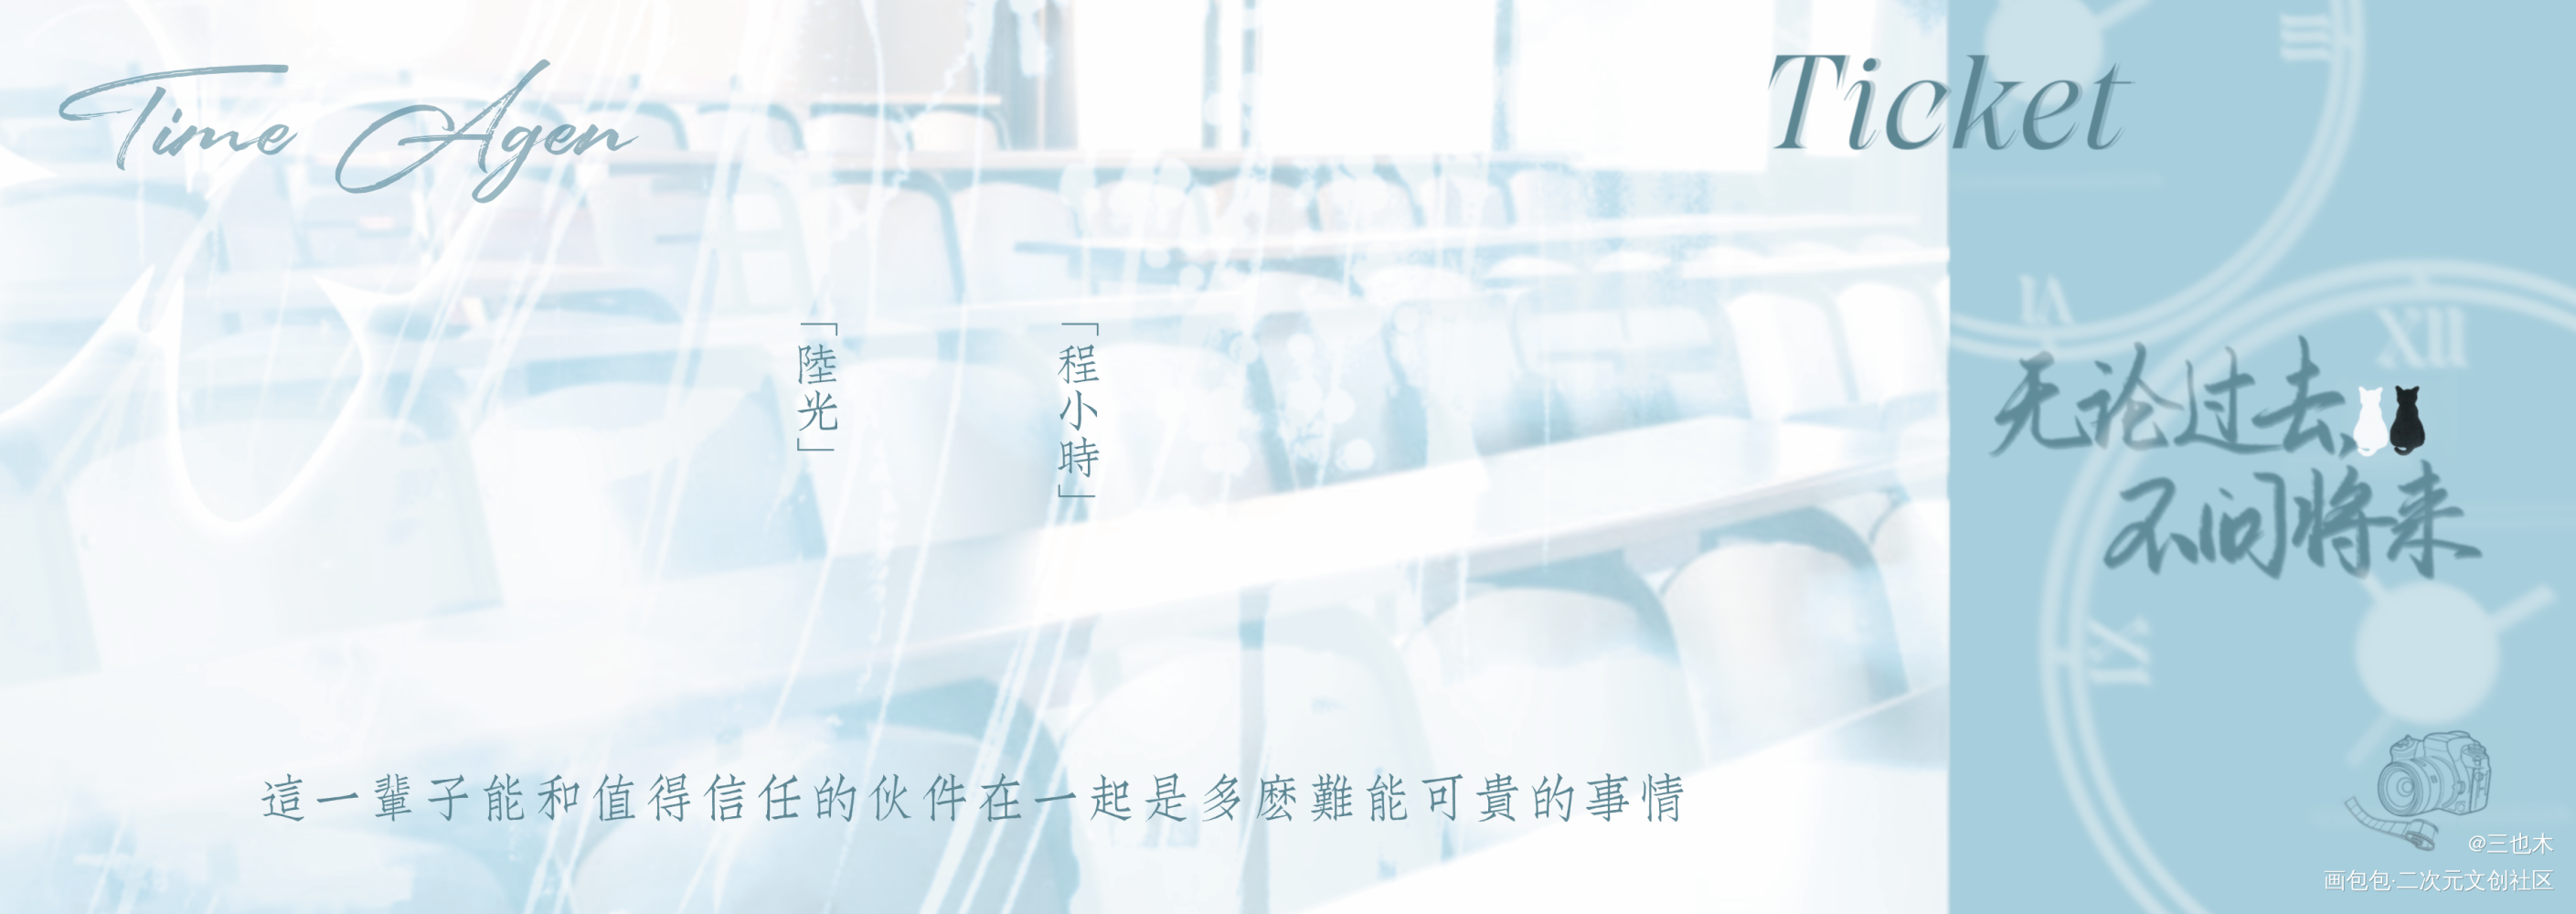 【七夕】镭射票—时光代理人_时光代理人陆光程小时字体设计绘画作品